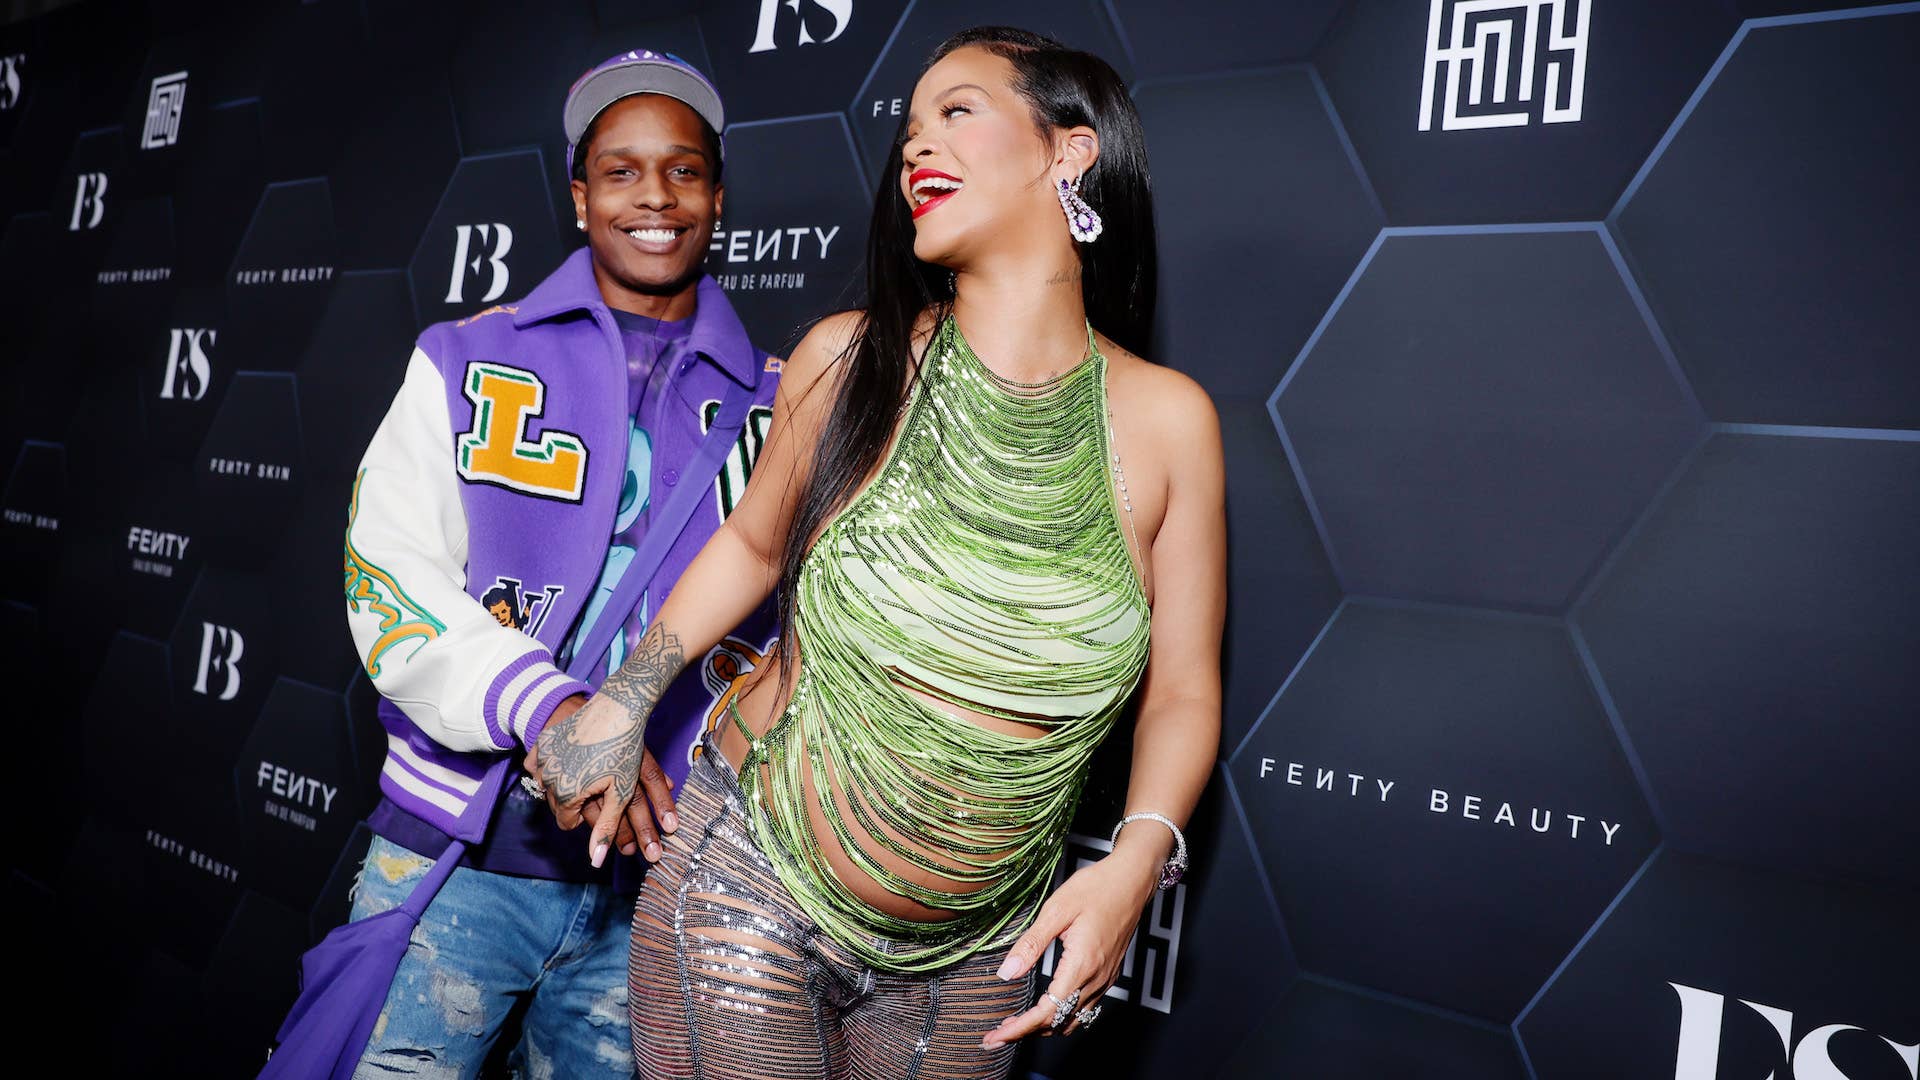 A$AP Rocky and Rihanna celebrate Fenty Beauty & Fenty Skin at Goya Studios